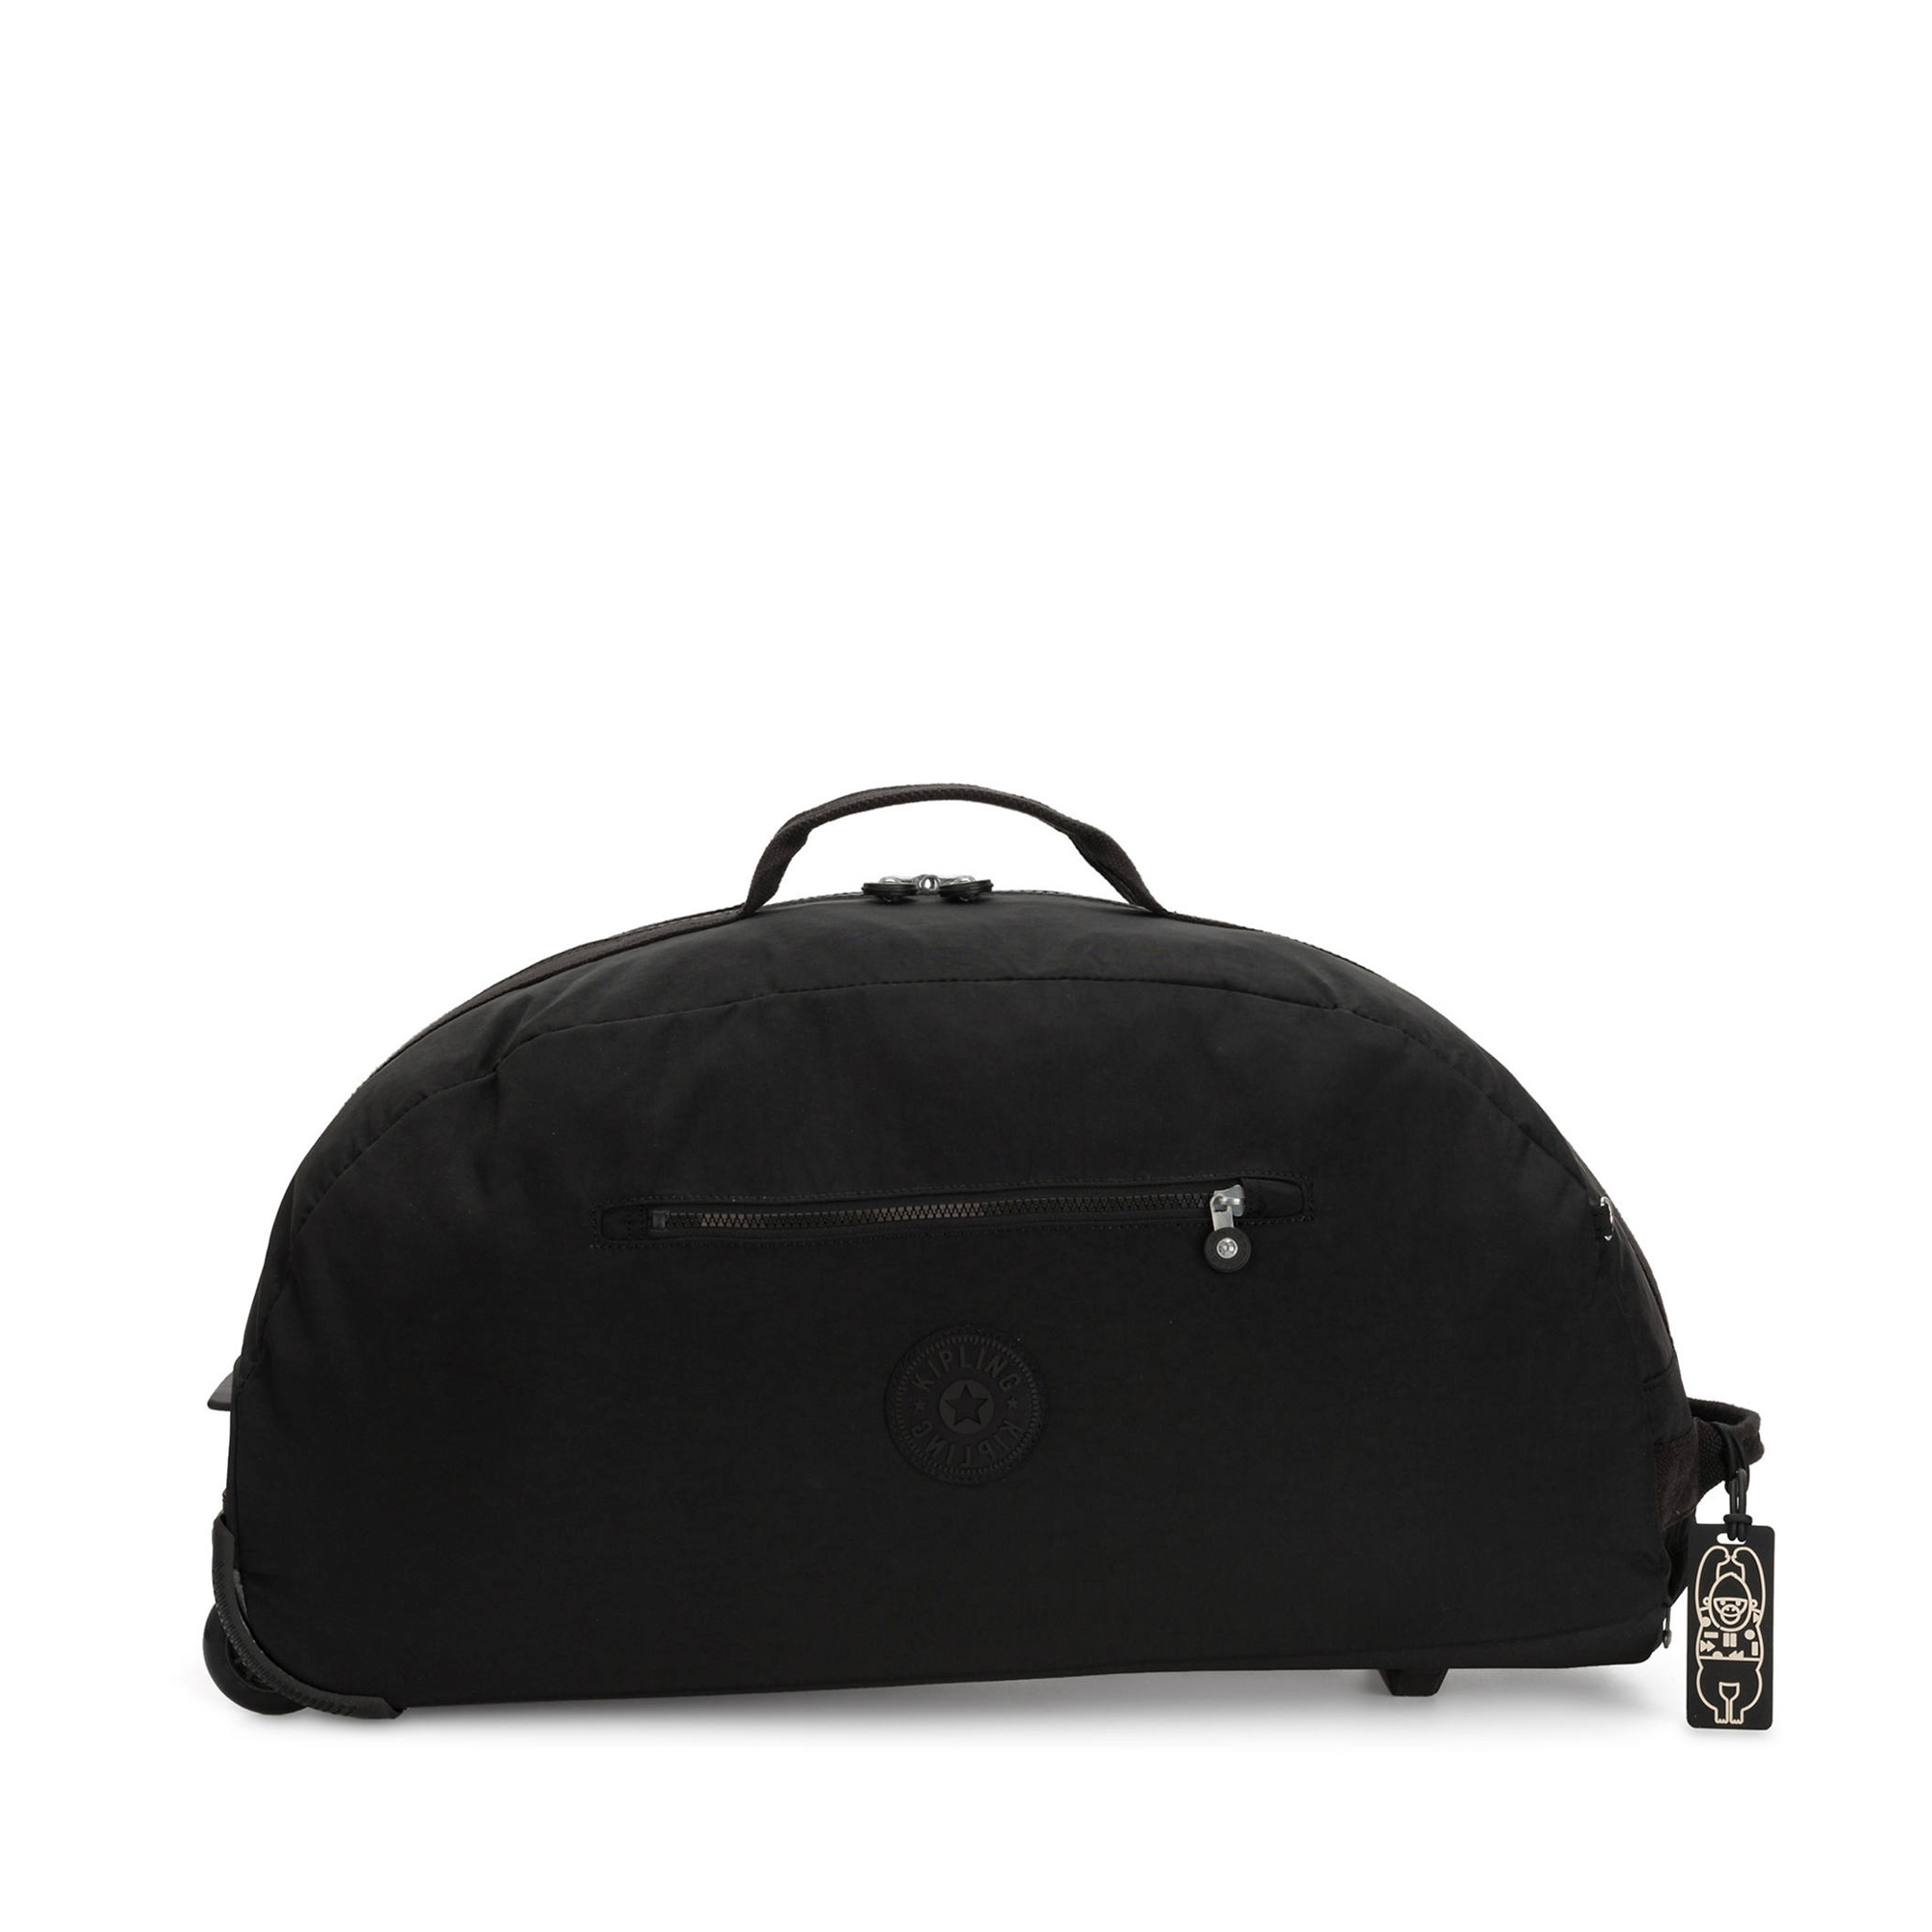 키플링 Devin On Wheels Luggage KI7063-P39 Black Noir 933